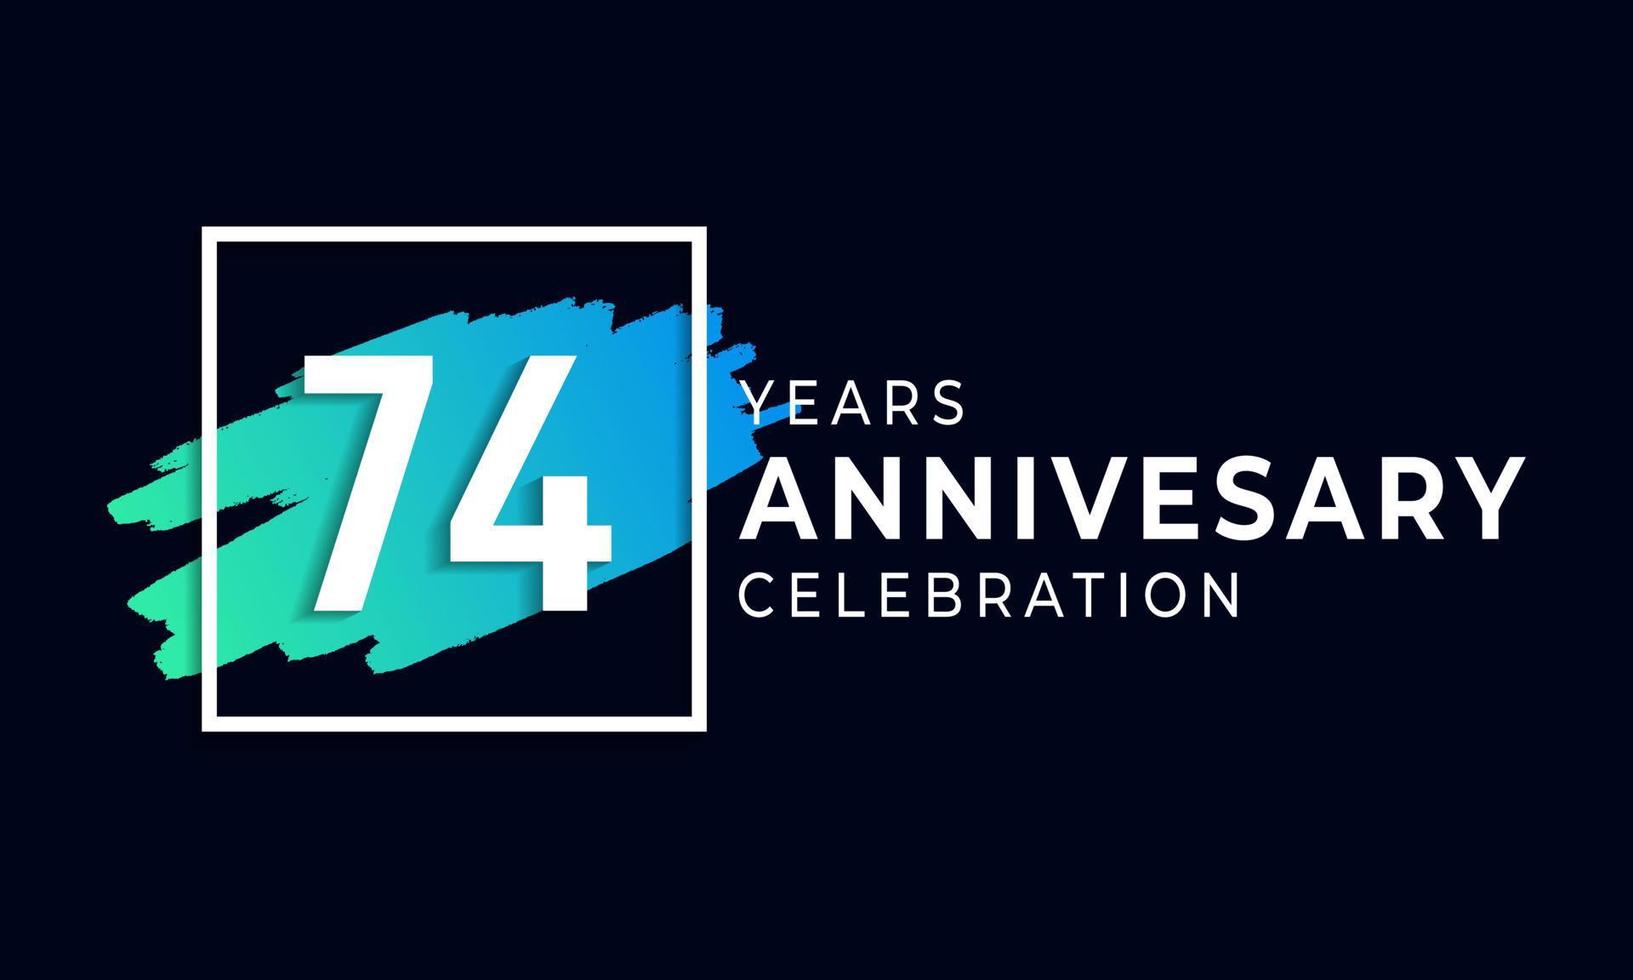 74-jarig jubileumfeest met blauwe borstel en vierkant symbool. gelukkige verjaardag groet viert gebeurtenis geïsoleerd op zwarte achtergrond vector